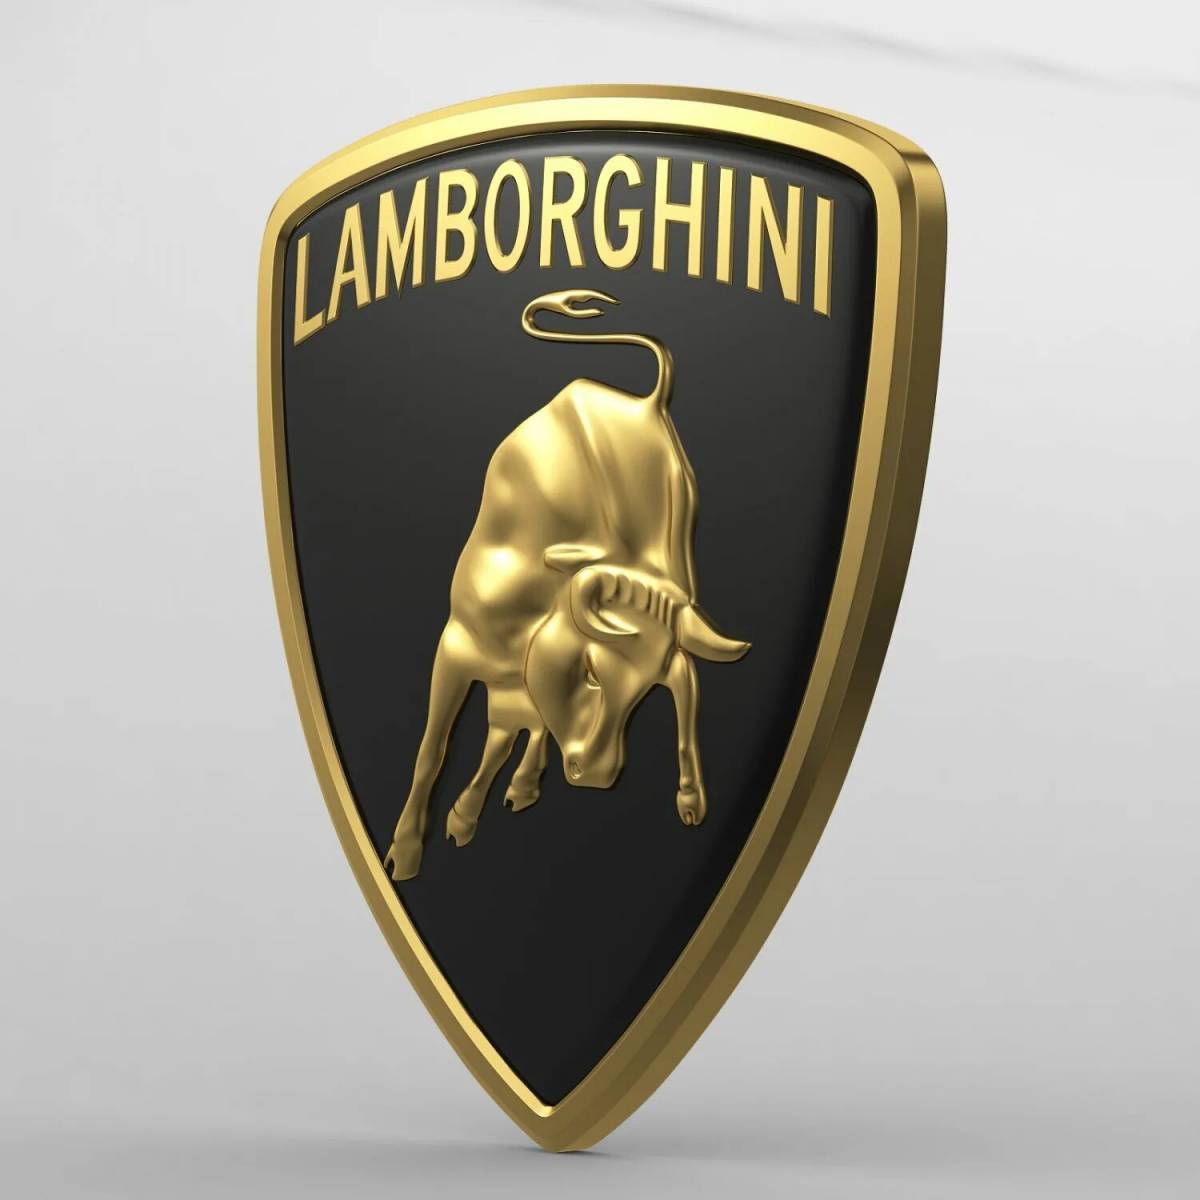 Новый значок ламборгини. Значок Ламборгини. Марка Lamborghini. Фирменный знак Ламборджини. Ламборгини шильдик.